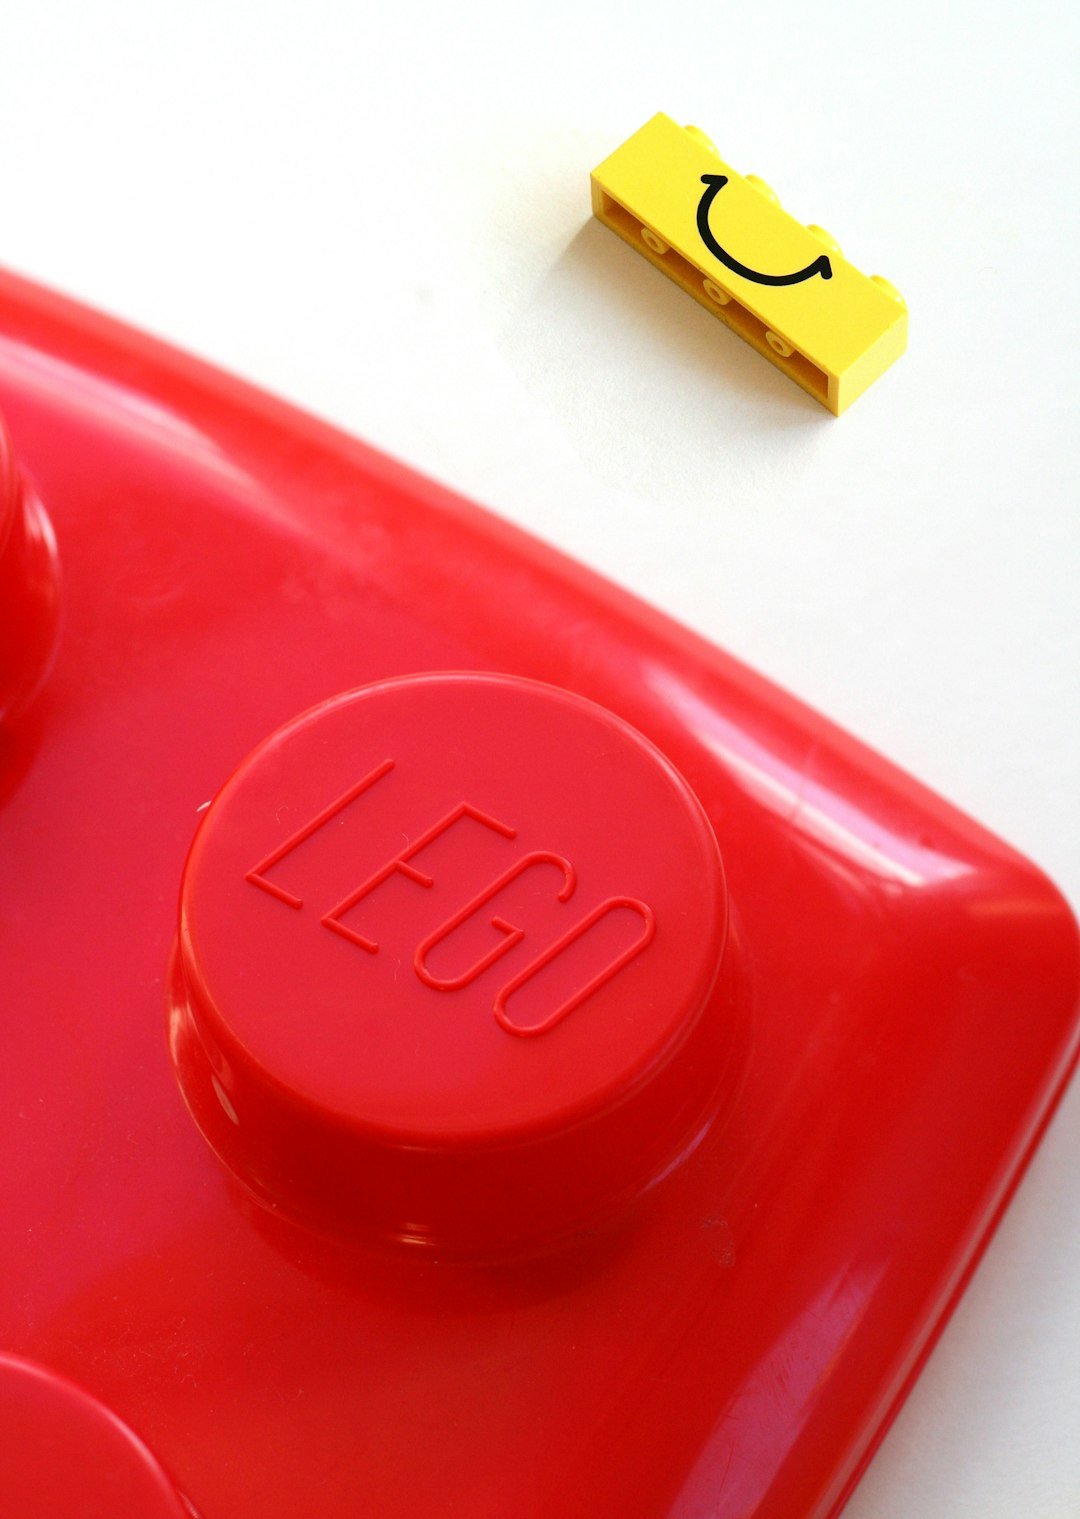 LEGO toy button